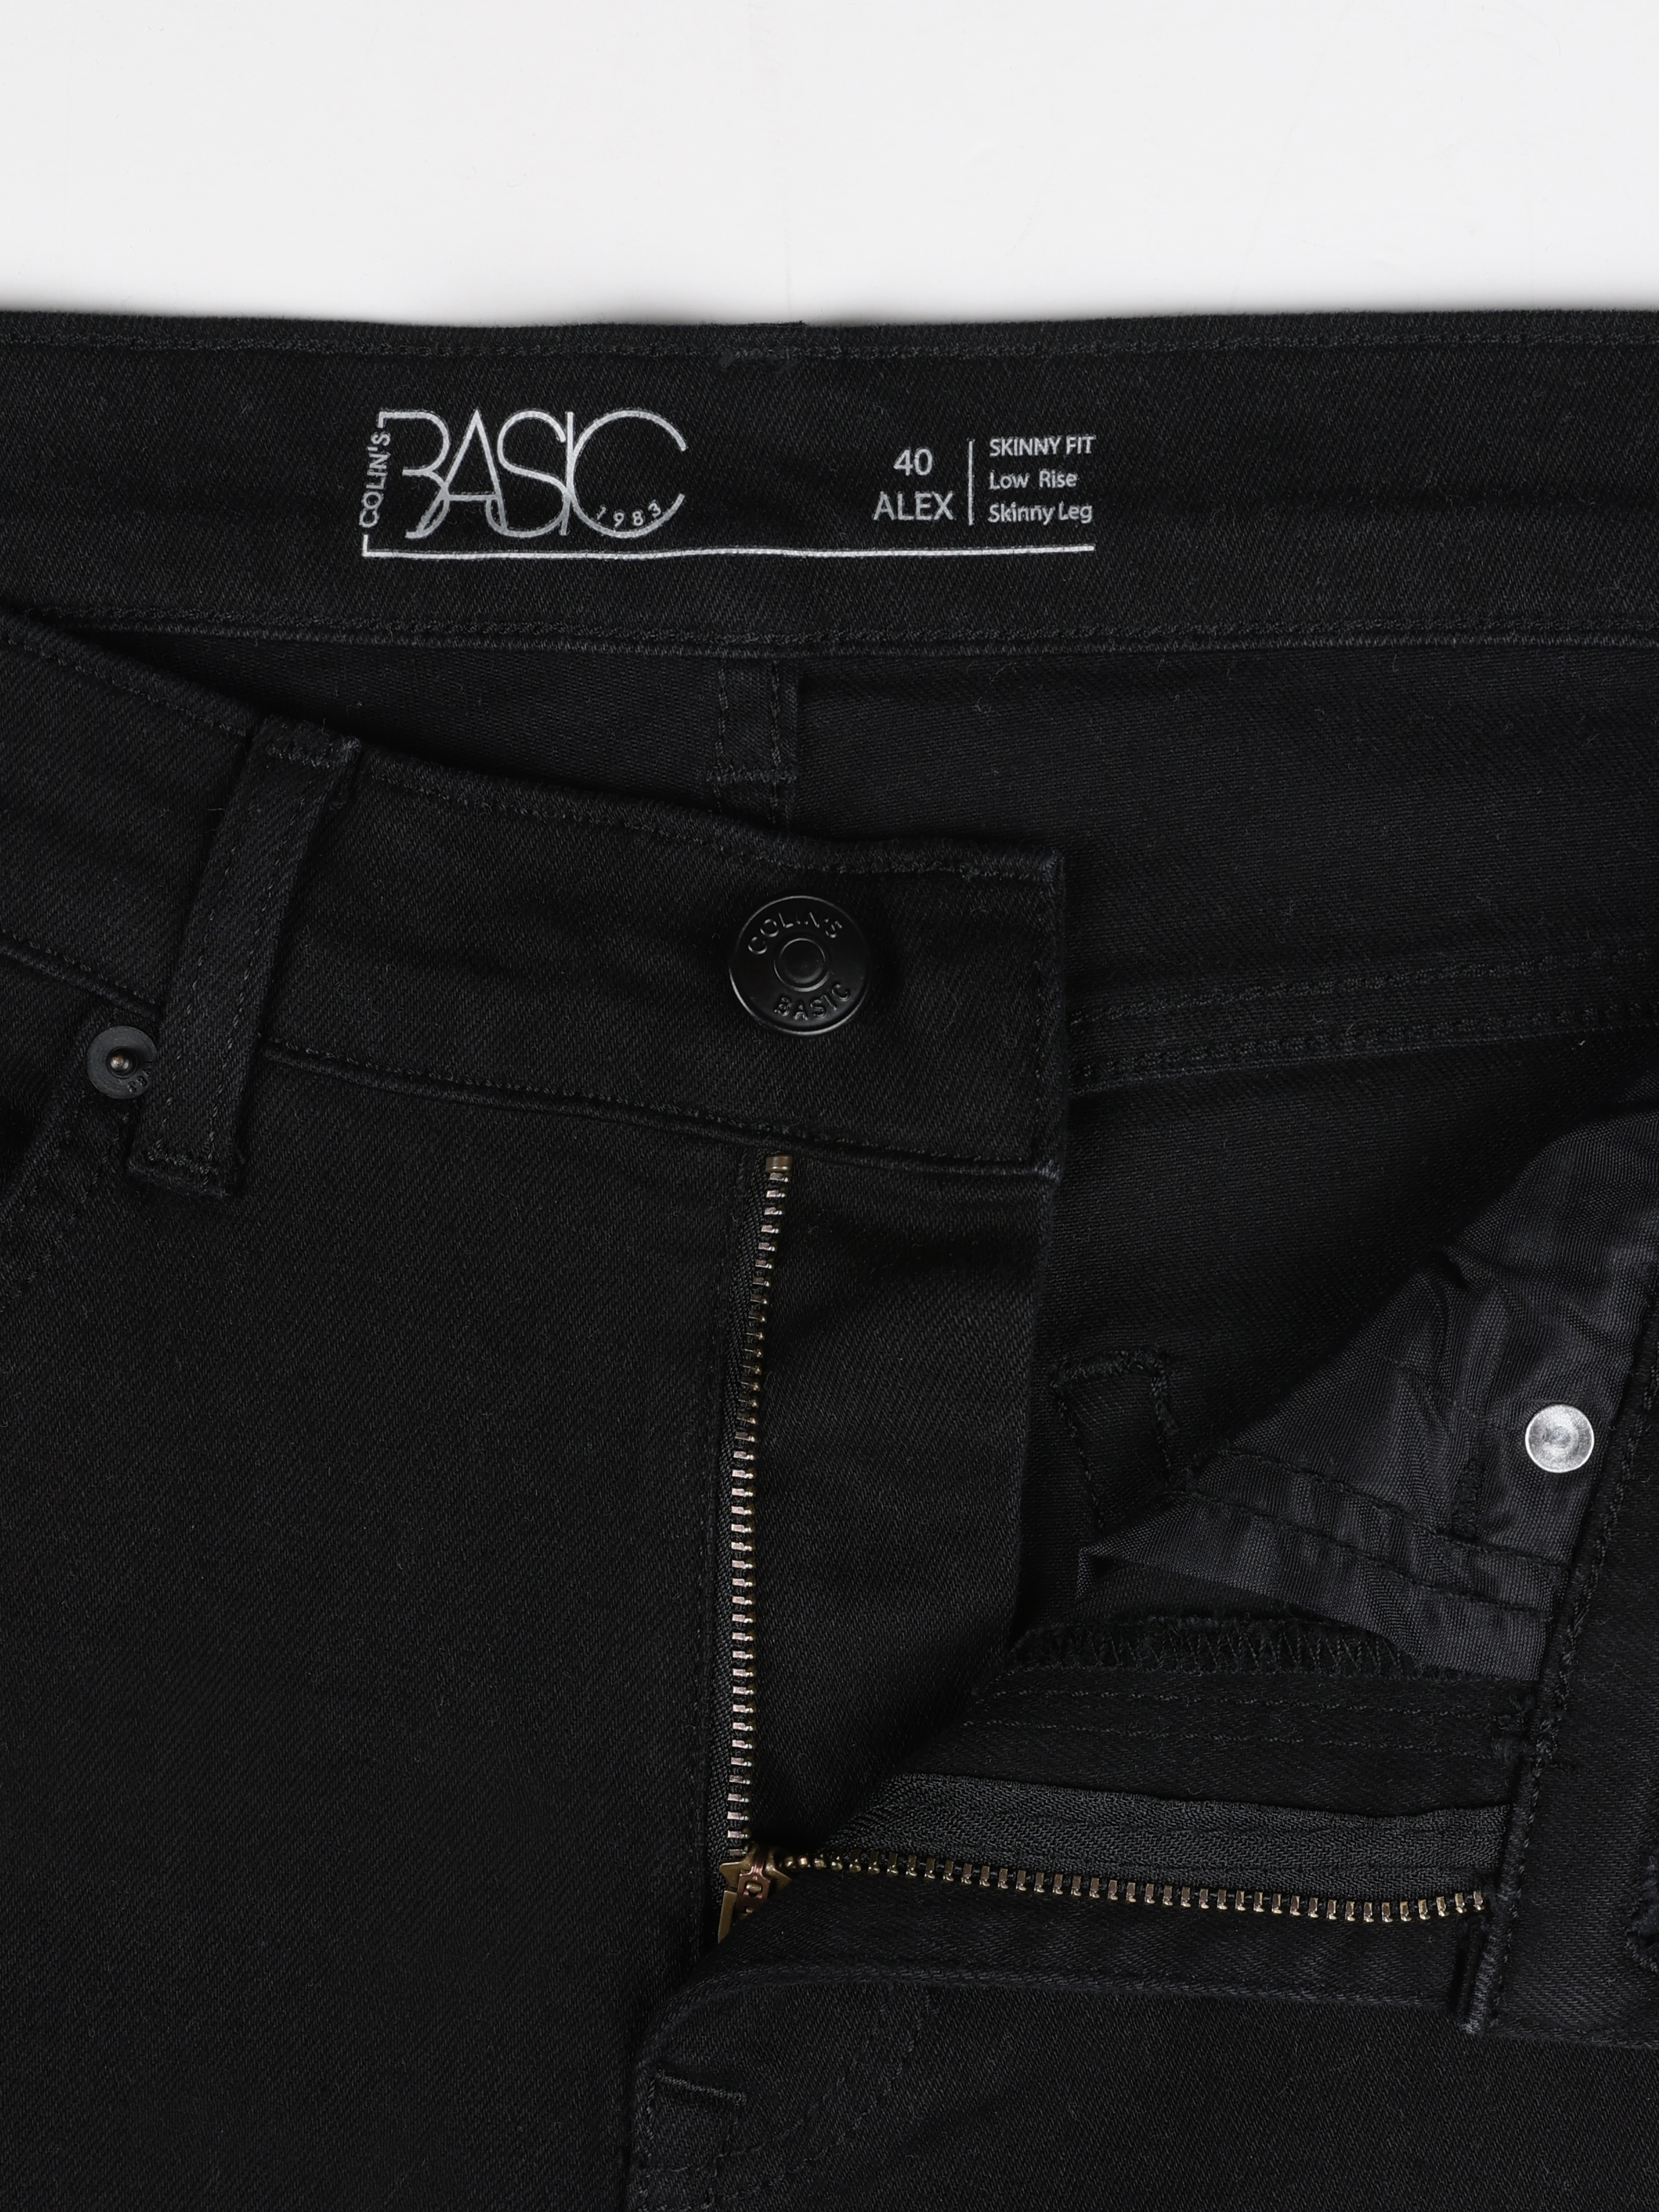 اعرض التفاصيل لـ 040 Alex Super Slim Fit منخفض الخصر نحيل الساق بنطلون جينز أسود للرجال